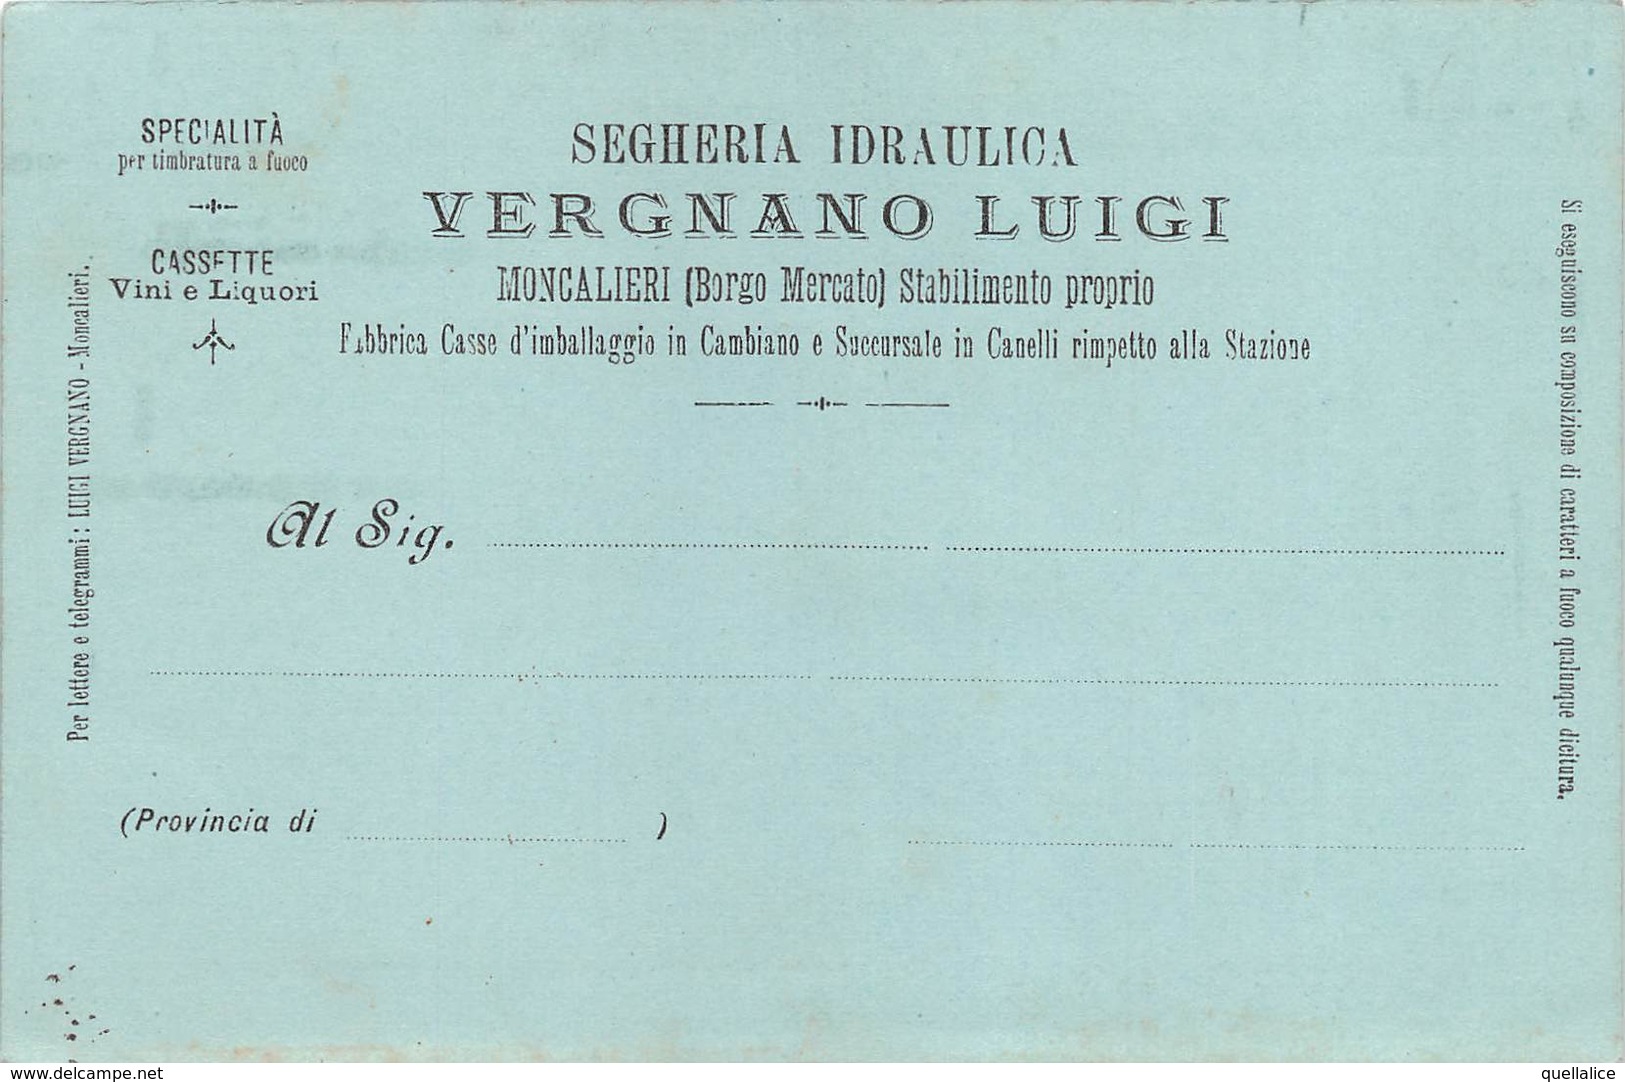 0258 "(TO) MONCALIERI-BORGO MEERCATO-SEGHERIA IDRAULICA VERGNANO LUIGI-SPECIALITA' TIMBRATURA A FUOCO" CART SPED 1903 - Verkopers